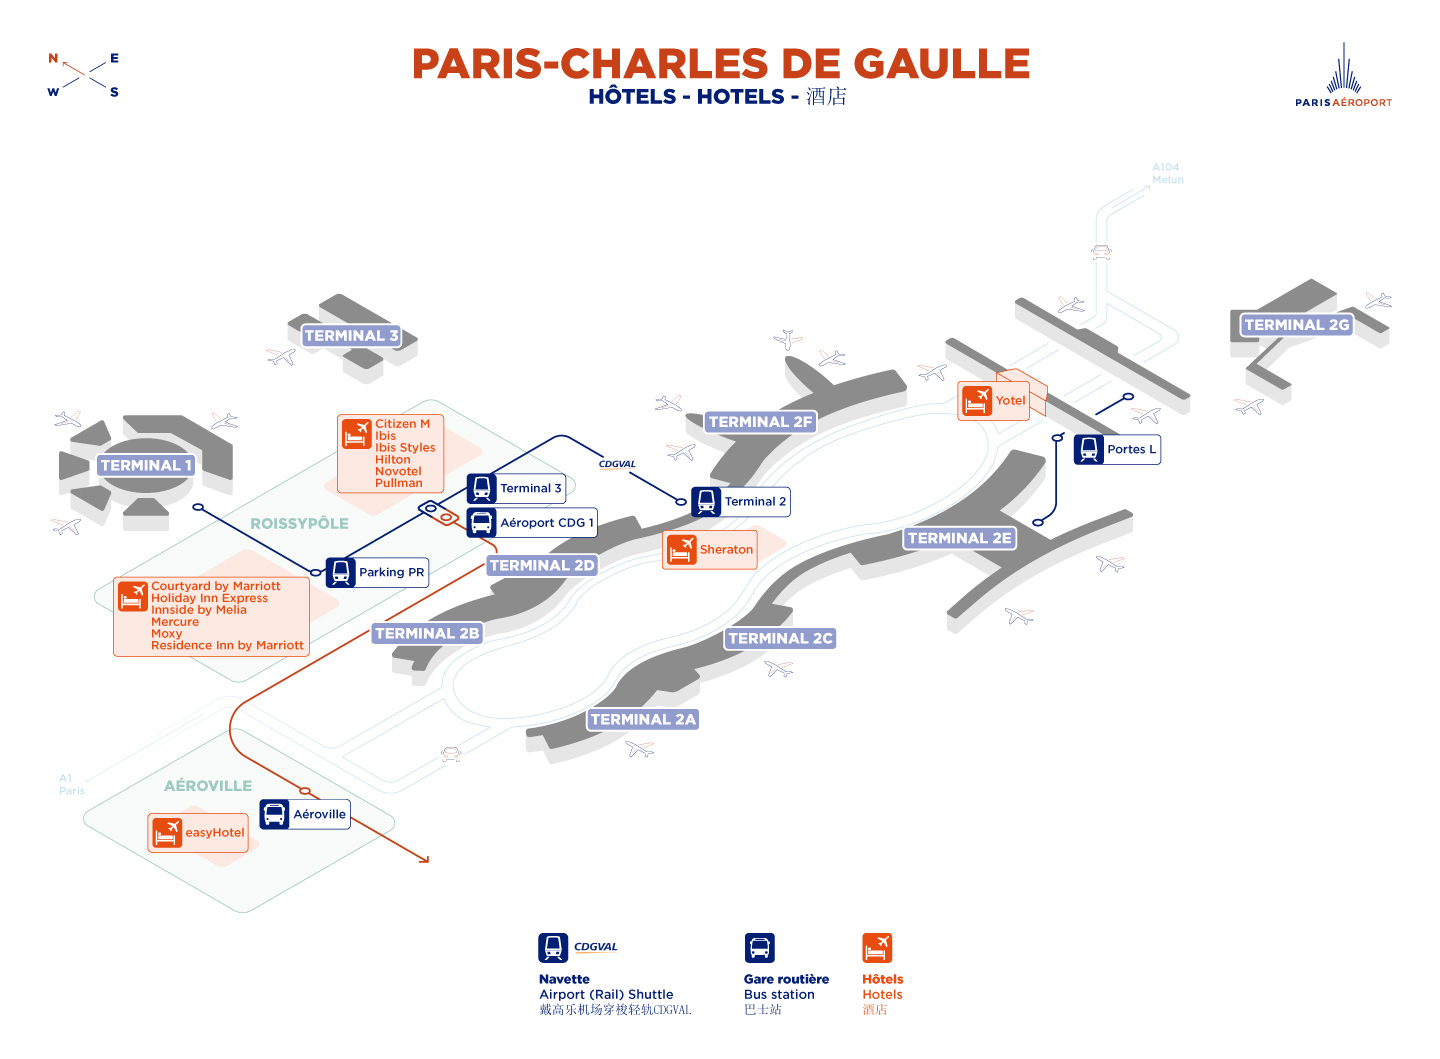 Plan des hotels à Paris-CDG